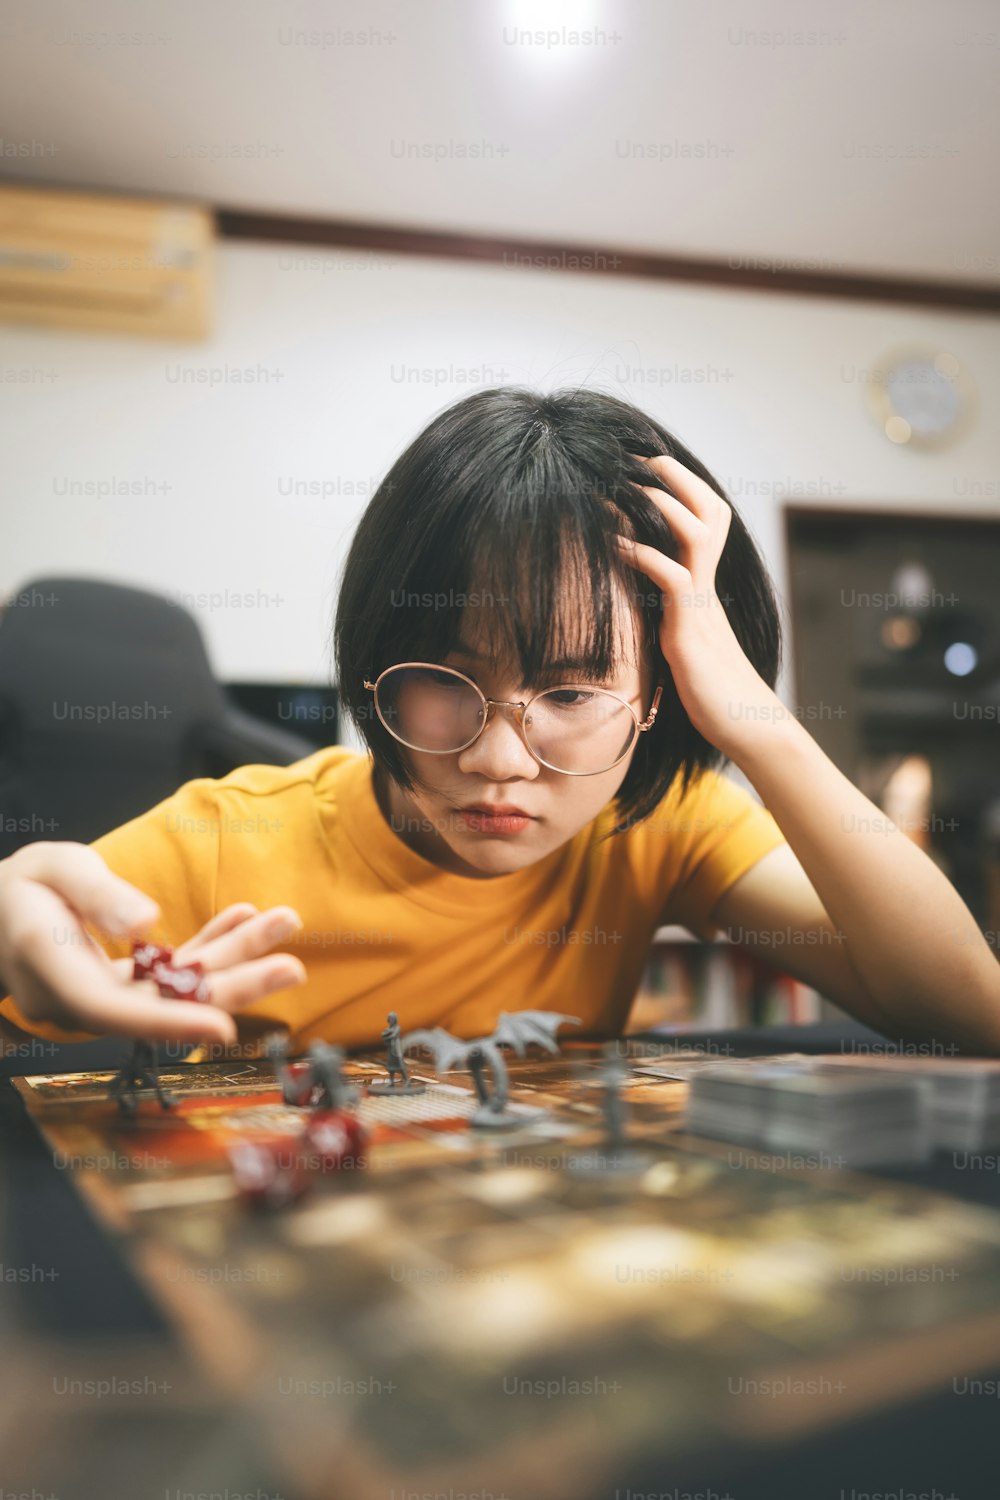 Stile di vita della gente con hobby interessante a casa concetto. Giovane donna asiatica adulta che gioca al gioco da tavolo sul tavolo superiore.